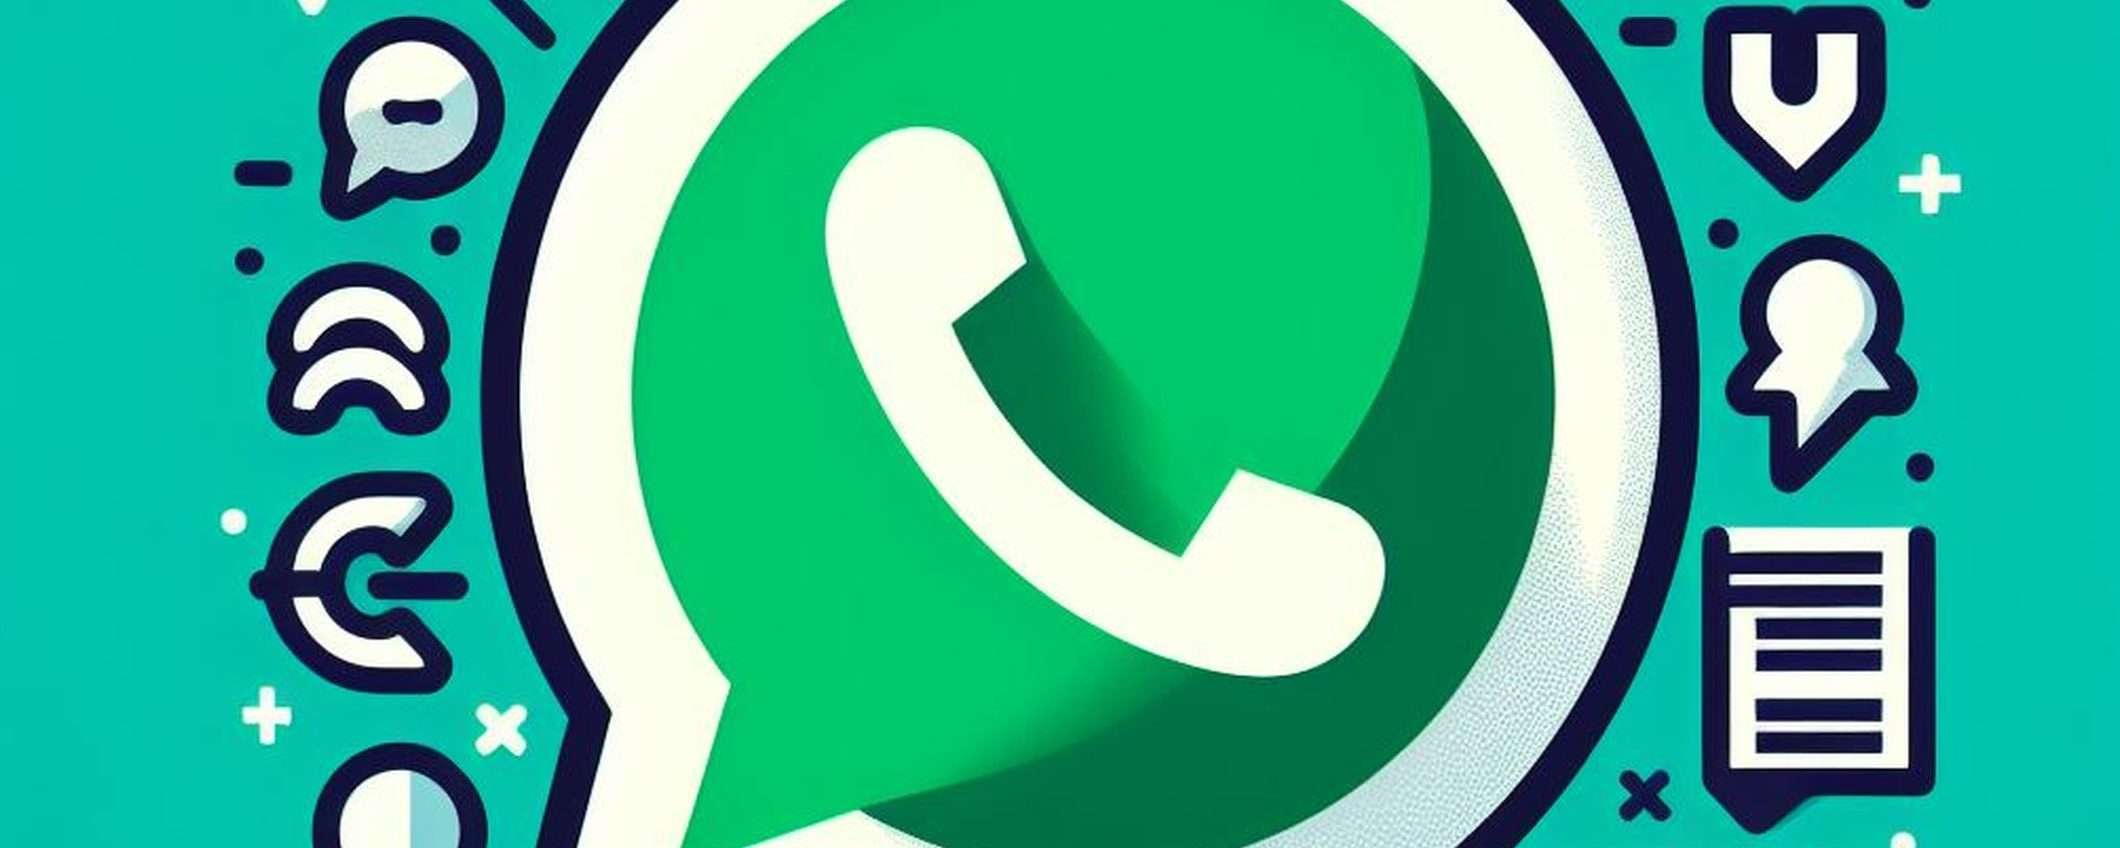 WhatsApp permette di allegare messaggi alle note